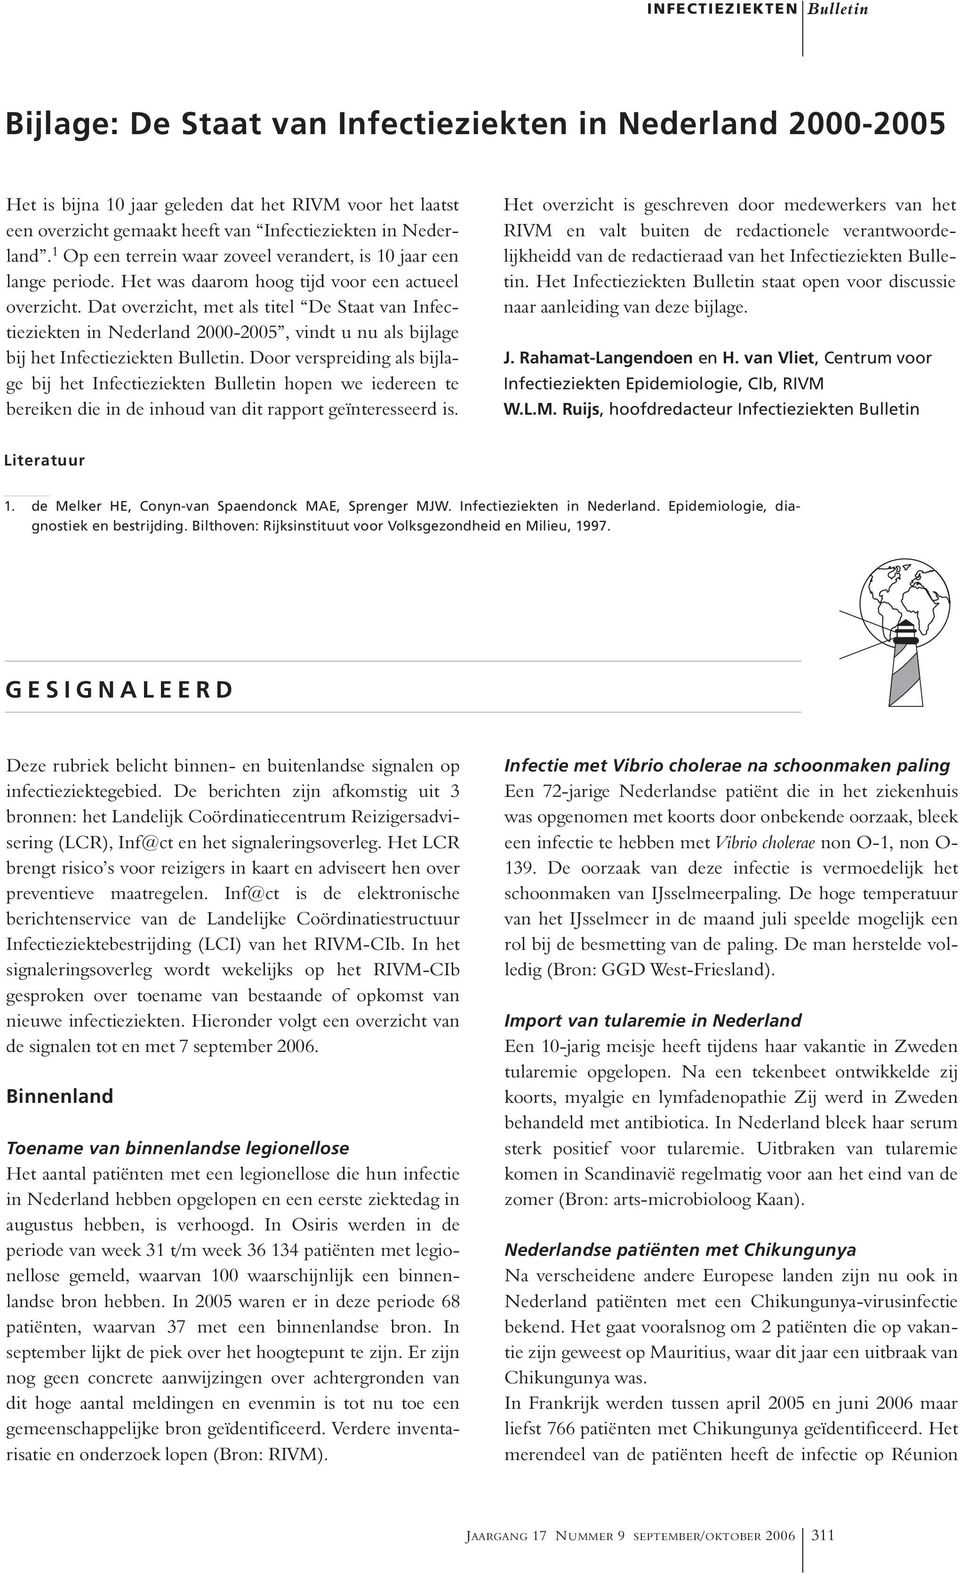 Dat overzicht, met als titel De Staat van Infectieziekten in Nederland 2000-2005, vindt u nu als bijlage bij het Infectieziekten Bulletin.